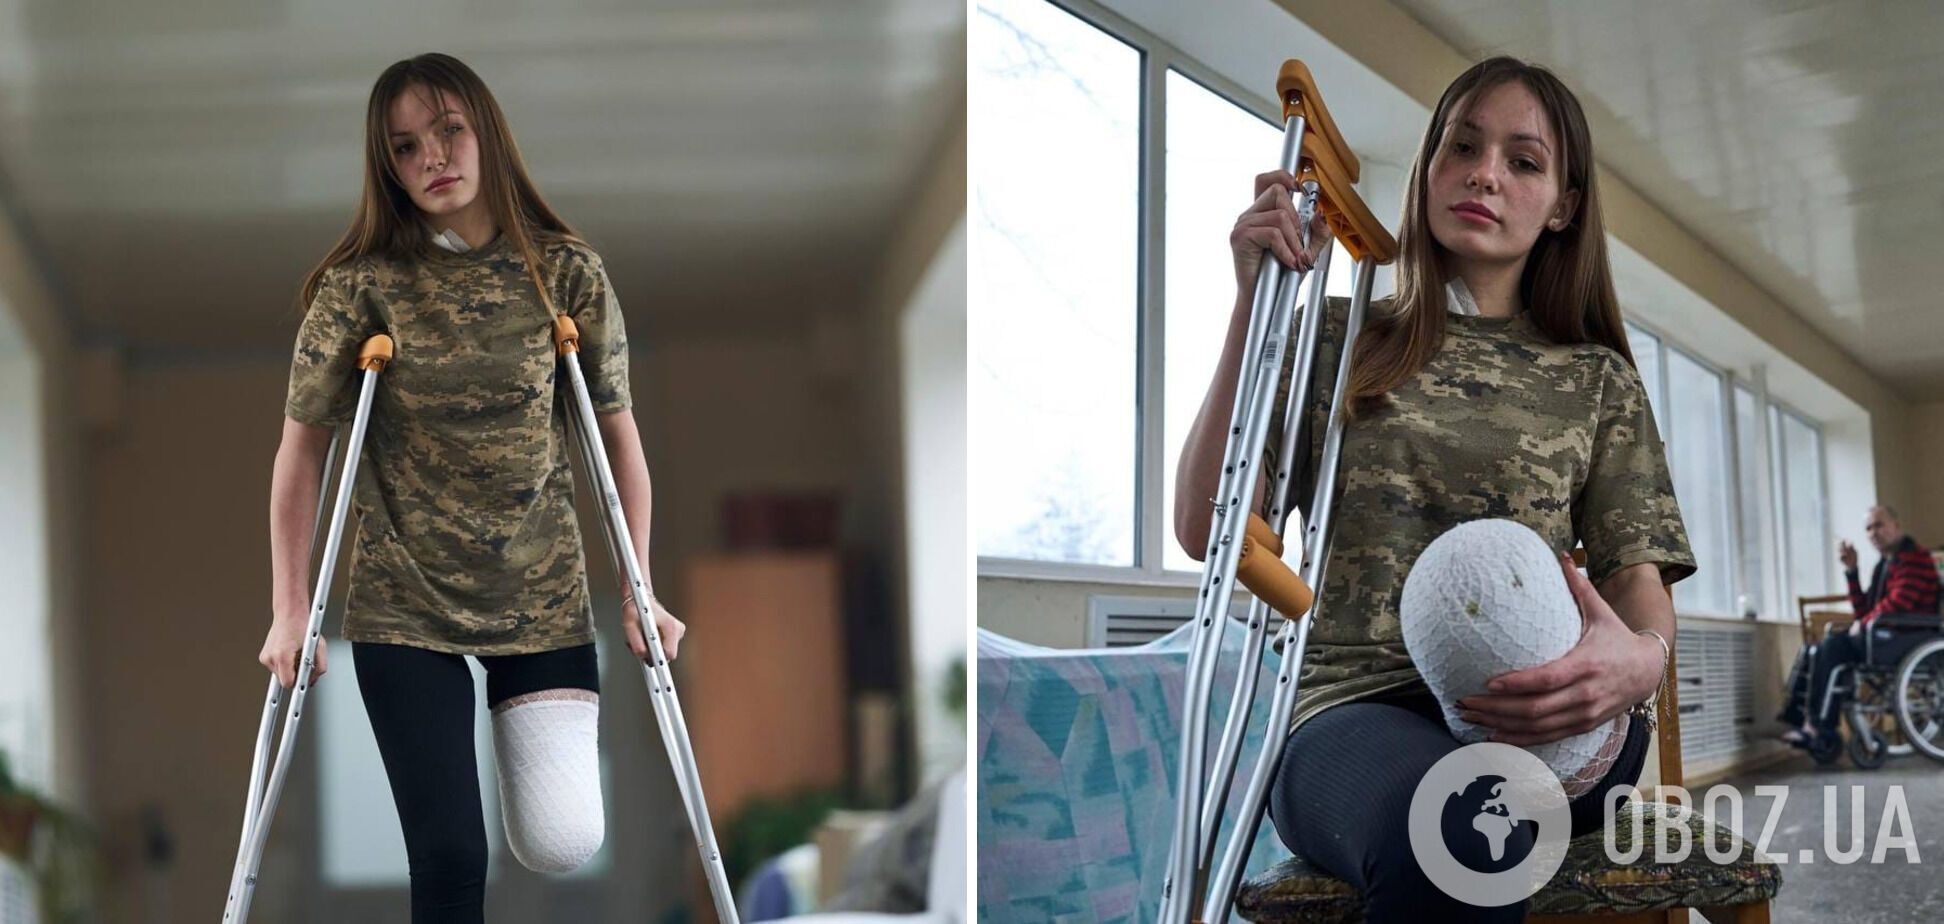 'Стала символом несокрушимости': в сети рассказали о юной защитнице Украины, которая потеряла ногу на войне, но не сдалась